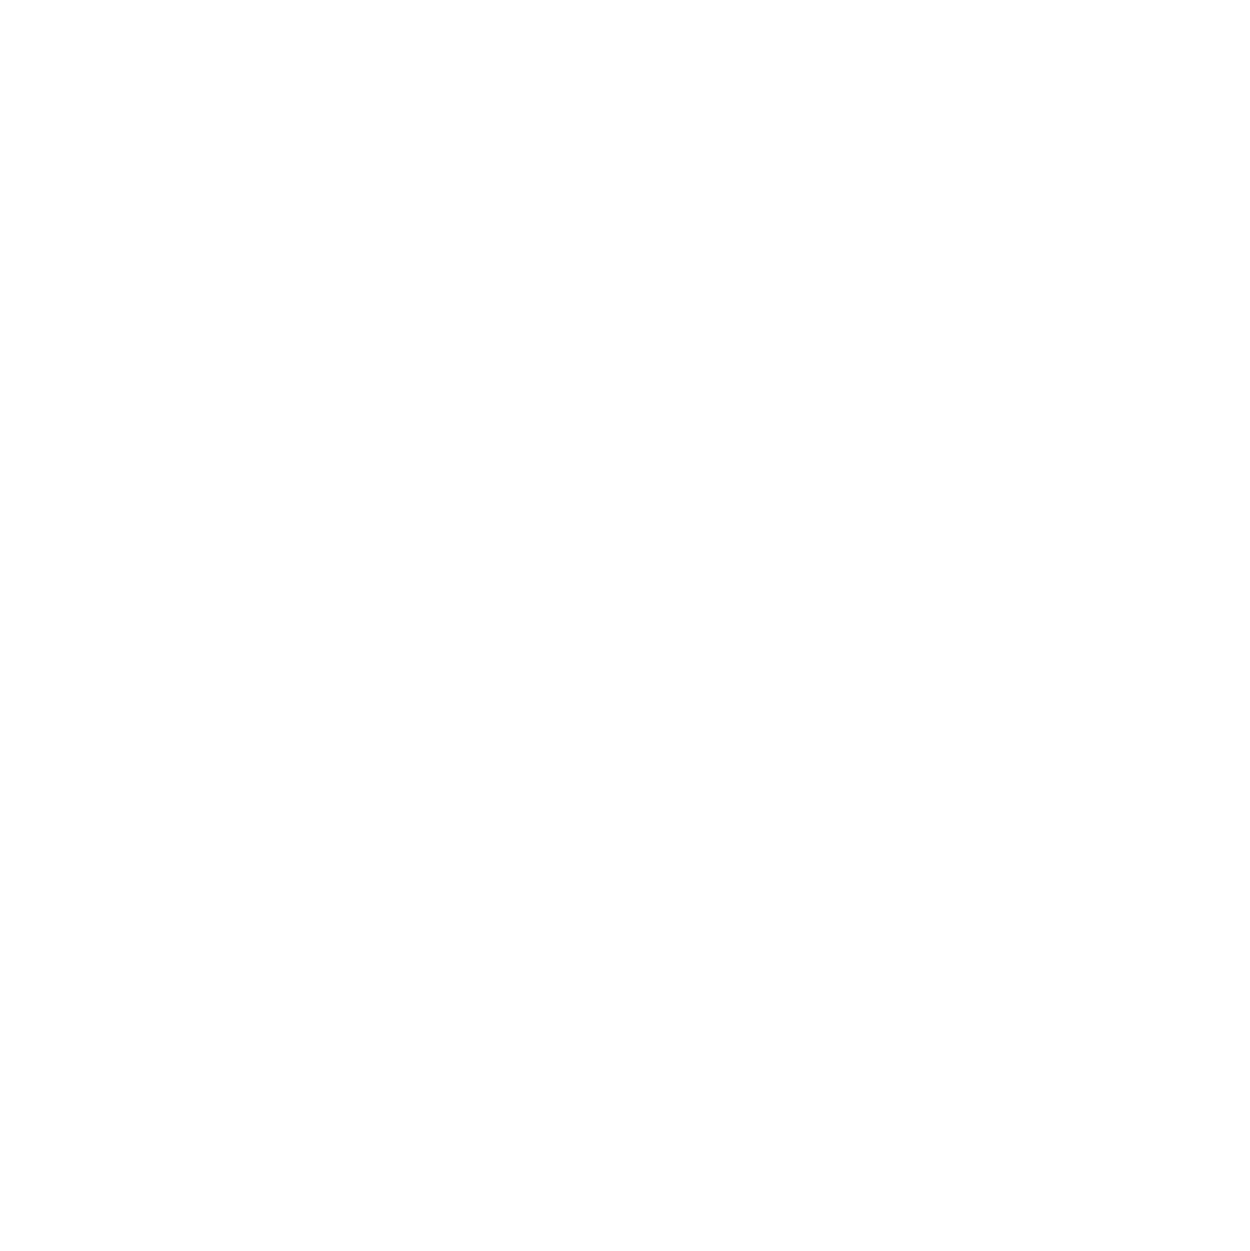 GOOD DESIGN & BUILD